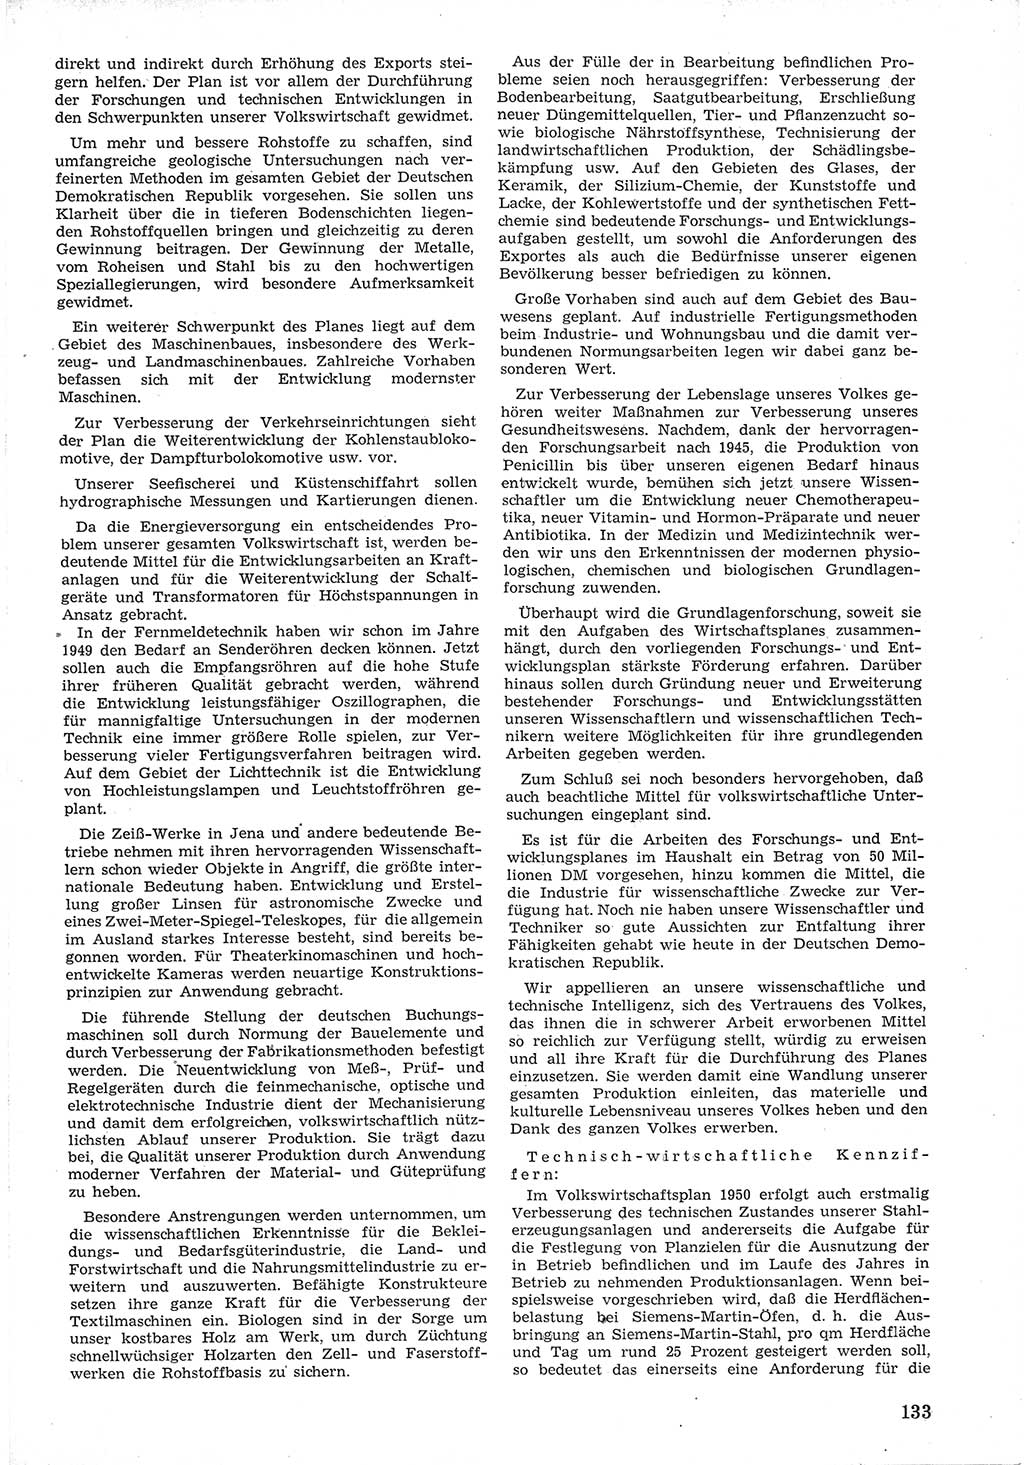 Provisorische Volkskammer (VK) der Deutschen Demokratischen Republik (DDR) 1949-1950, Dokument 145 (Prov. VK DDR 1949-1950, Dok. 145)